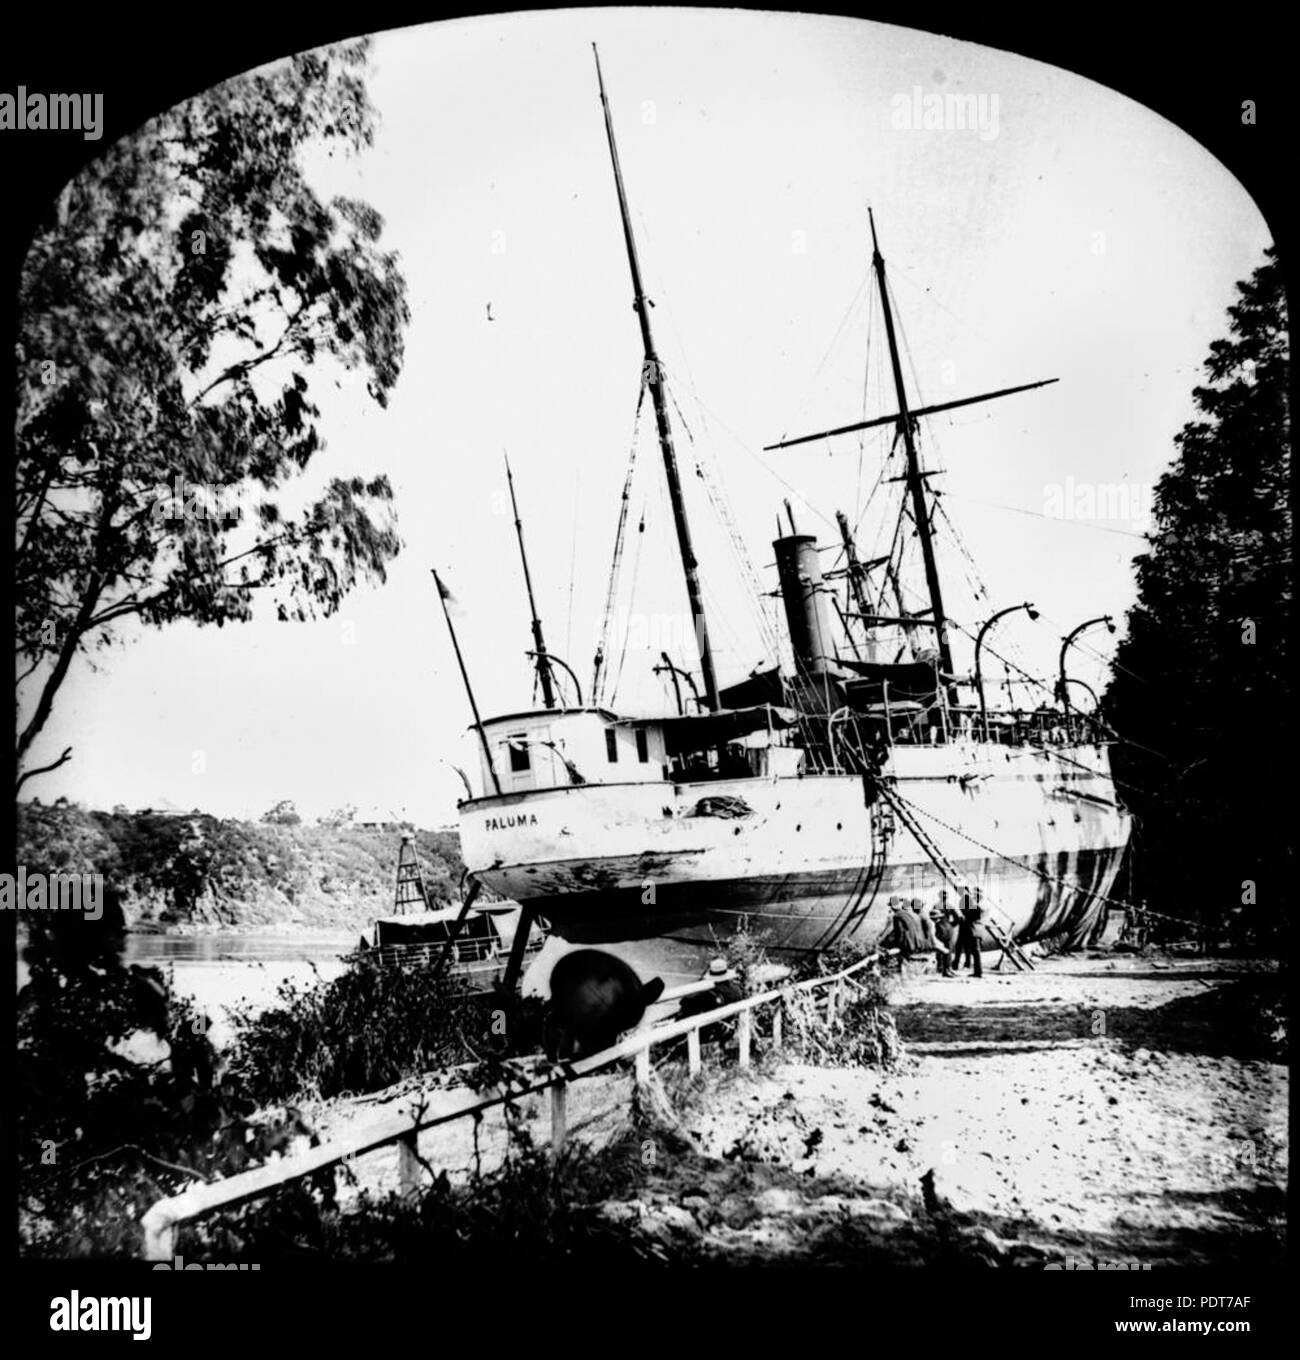 243 1 174939 StateLibQld Paluma (SHIP) encallado en el Jardín Botánico de Brisbane, 1893 Foto de stock